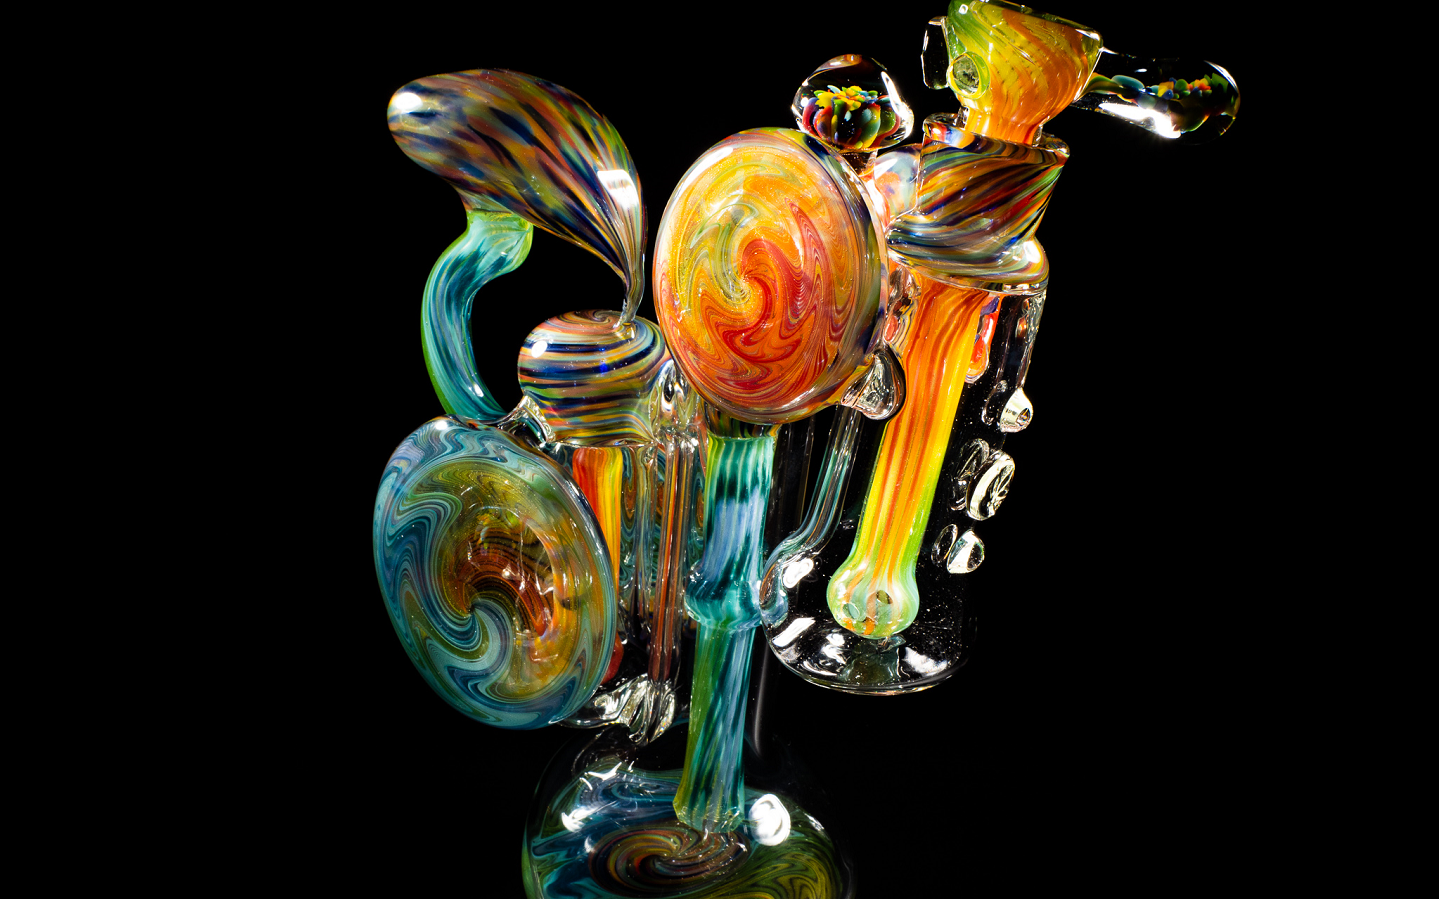 Bunt schimmernde Triple Bubbler Flower Rig von Buddbay Glass, kunstvoll gestaltet und ein Highlight der Heady Rig-Kategorie